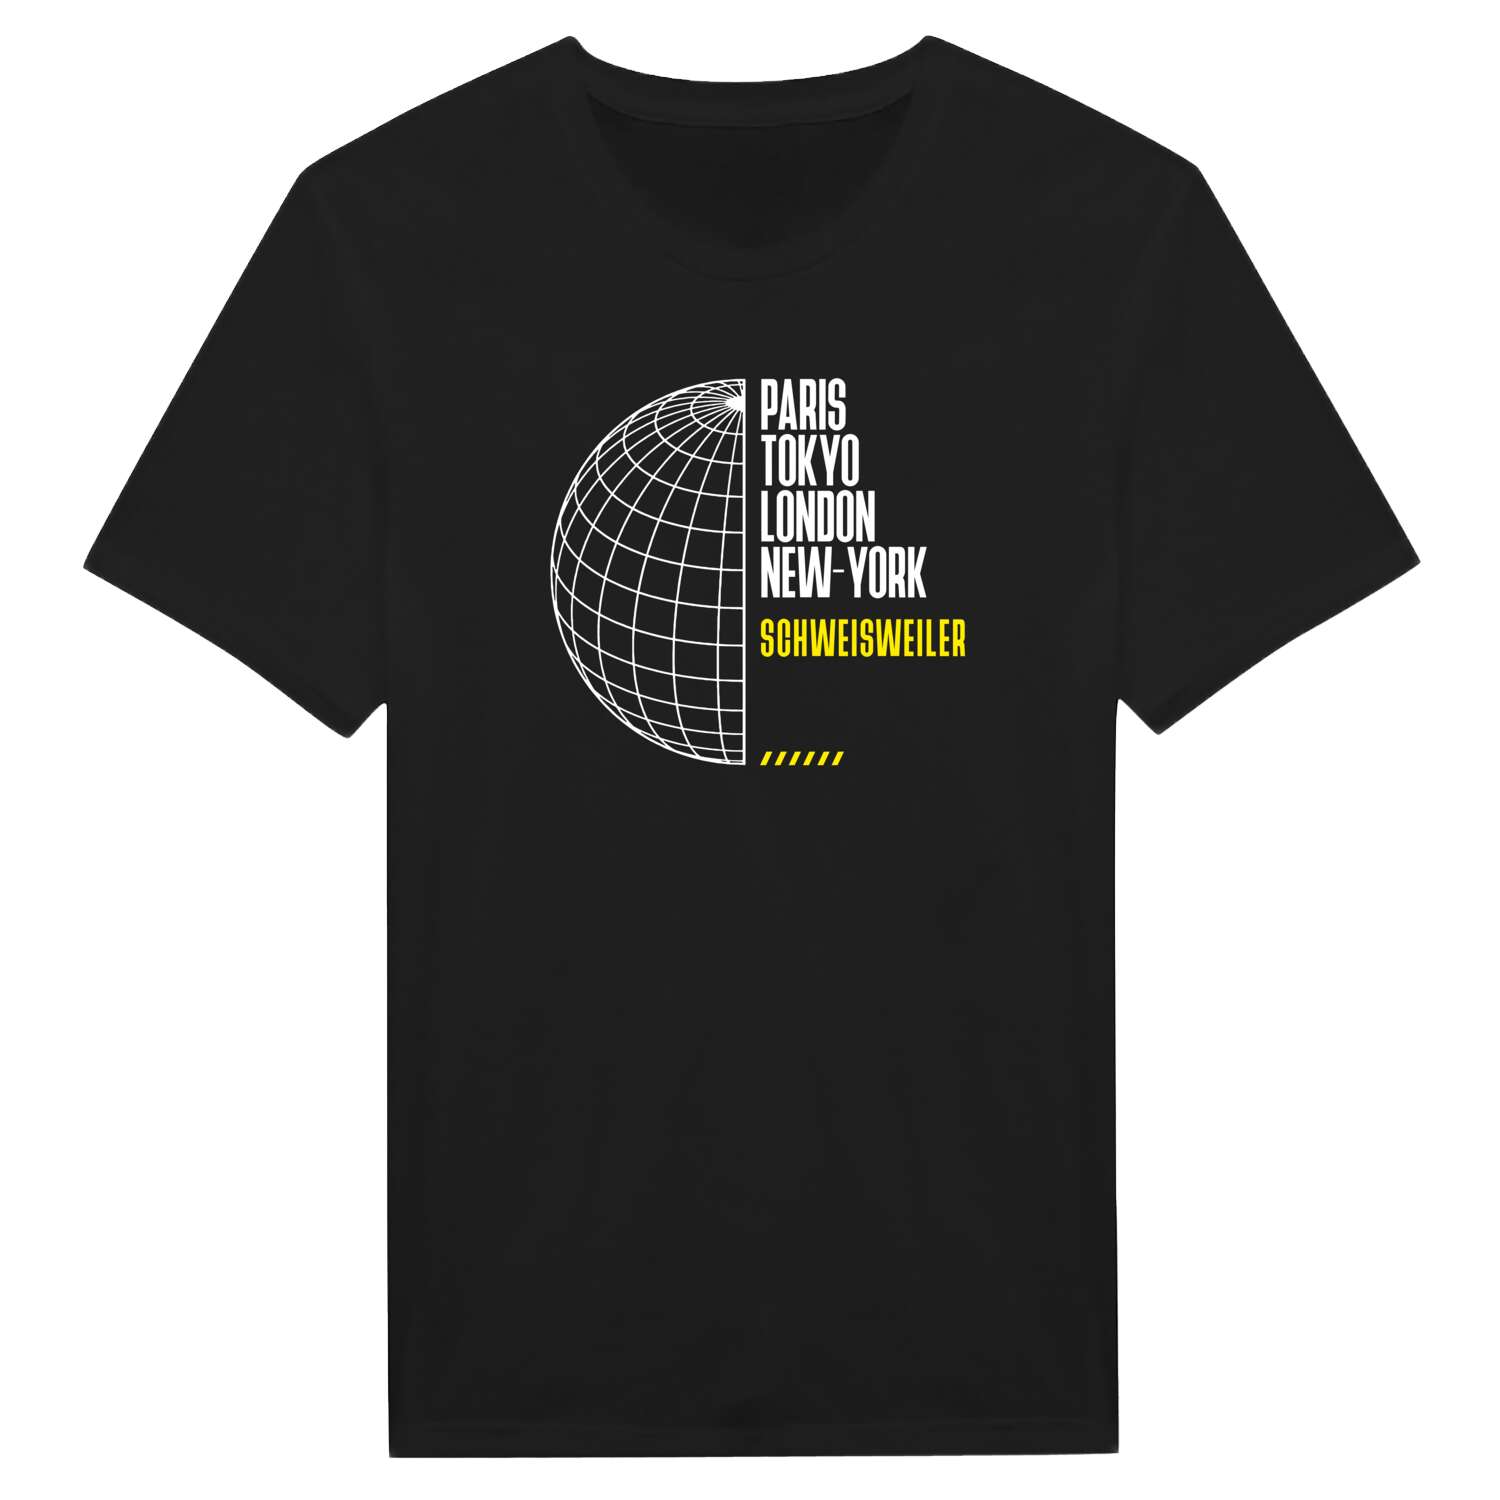 Schweisweiler T-Shirt »Paris Tokyo London«